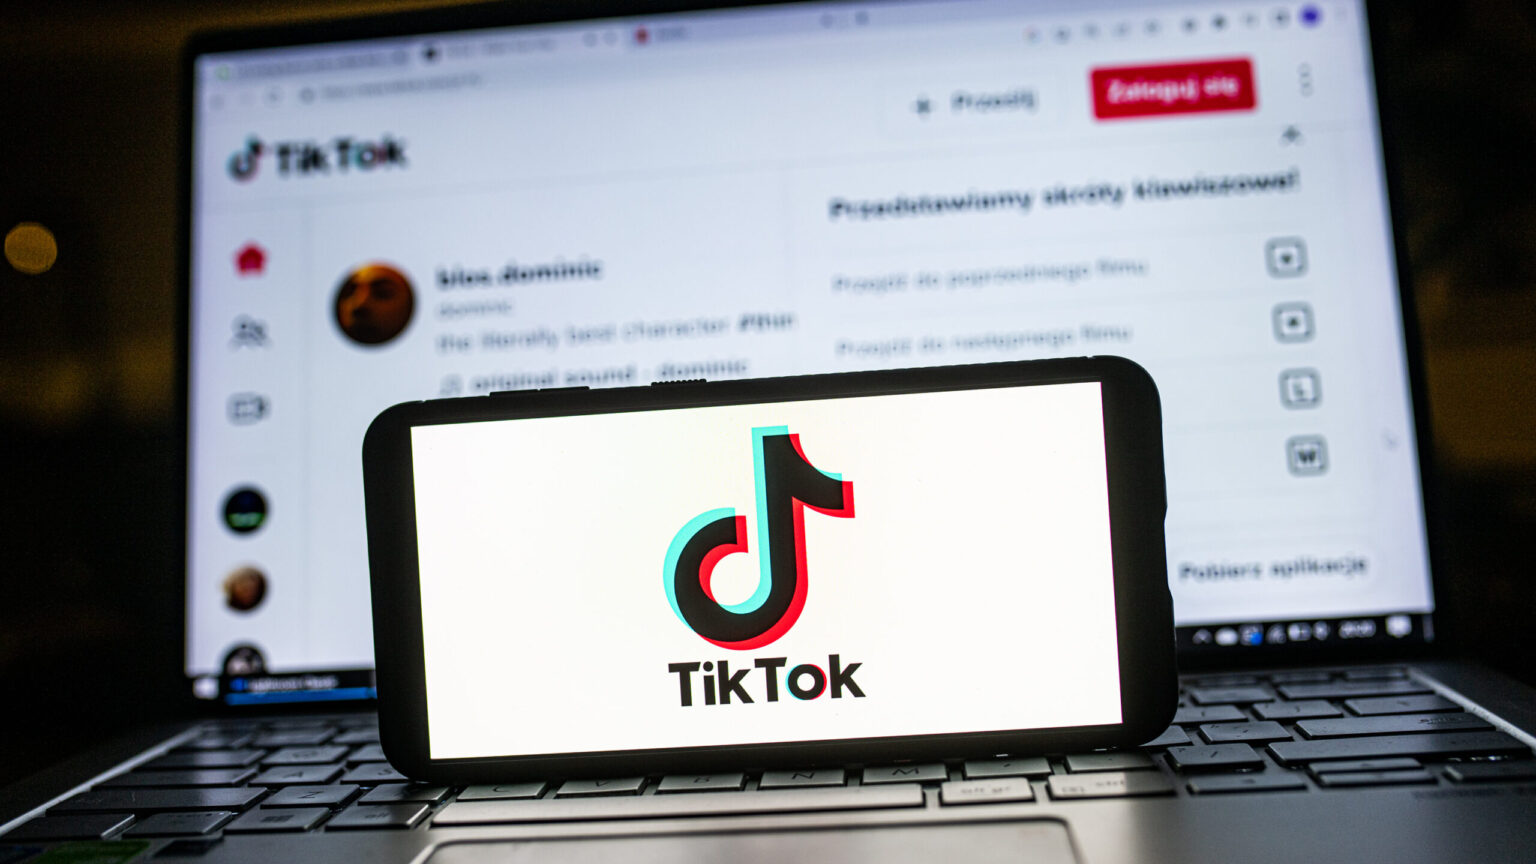 TikTok construirá dos nuevos centros de datos en Europa